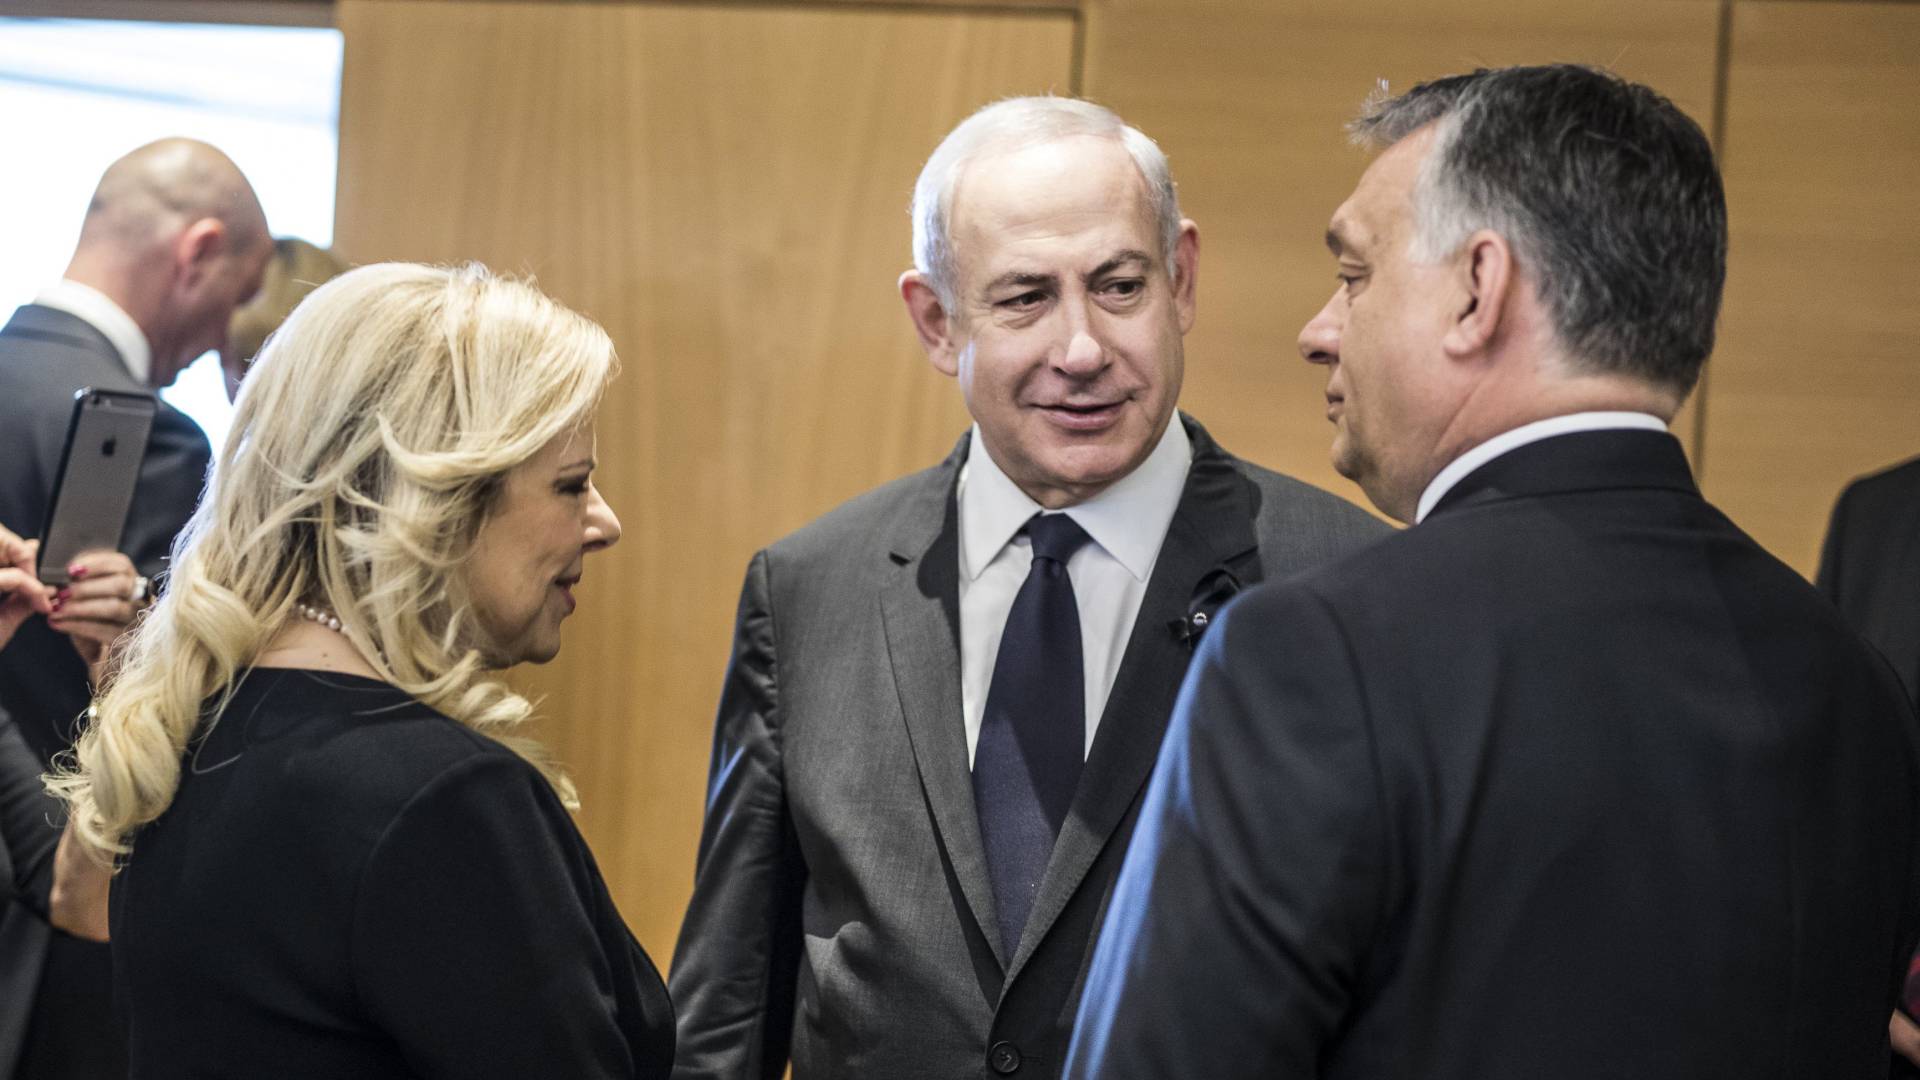 Netanjahu felesége erőszakkal akart bemenni a pilótafülkébe, miután nem köszöntötte a pilóta